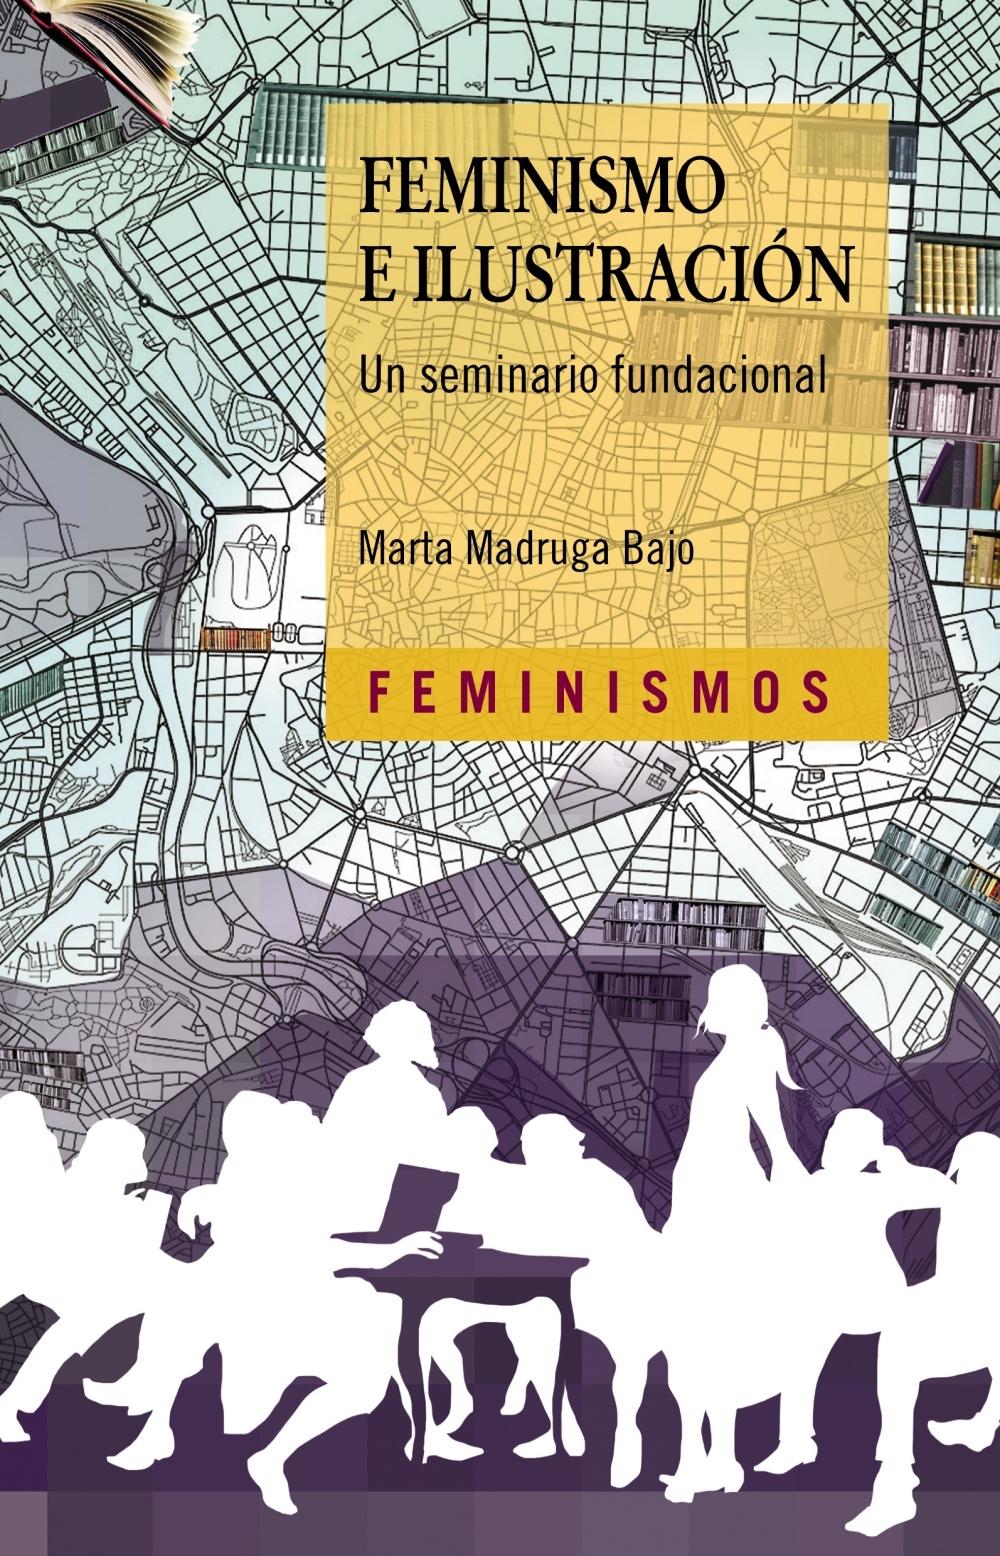 Feminismo e Ilustración "Un seminario fundacional". 